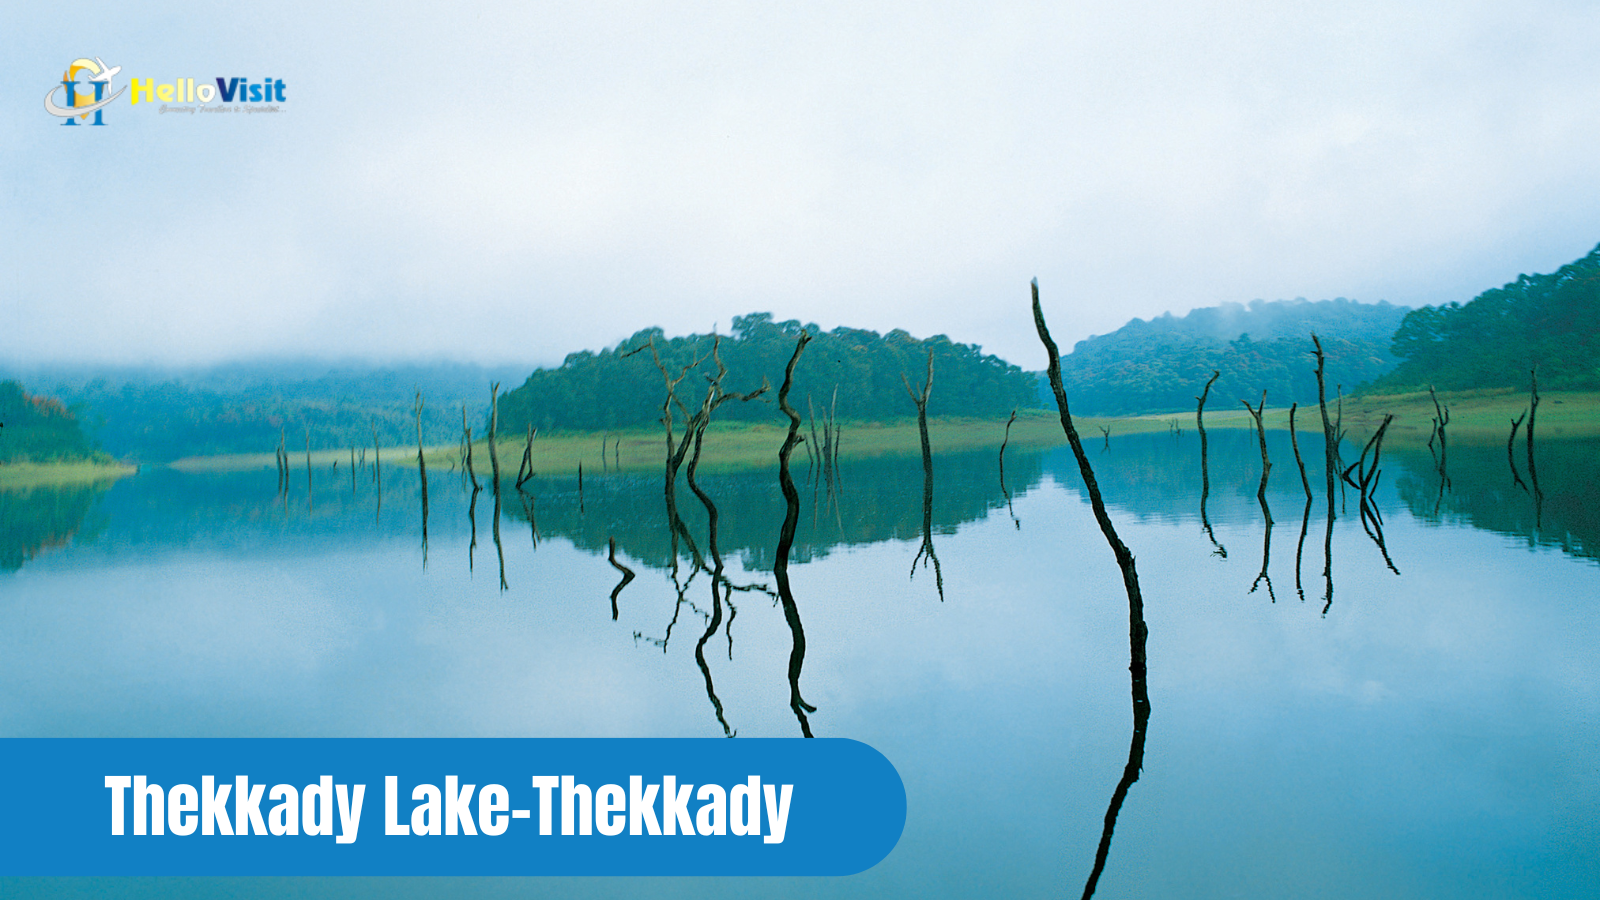 Thekkady Lake-Thekkady